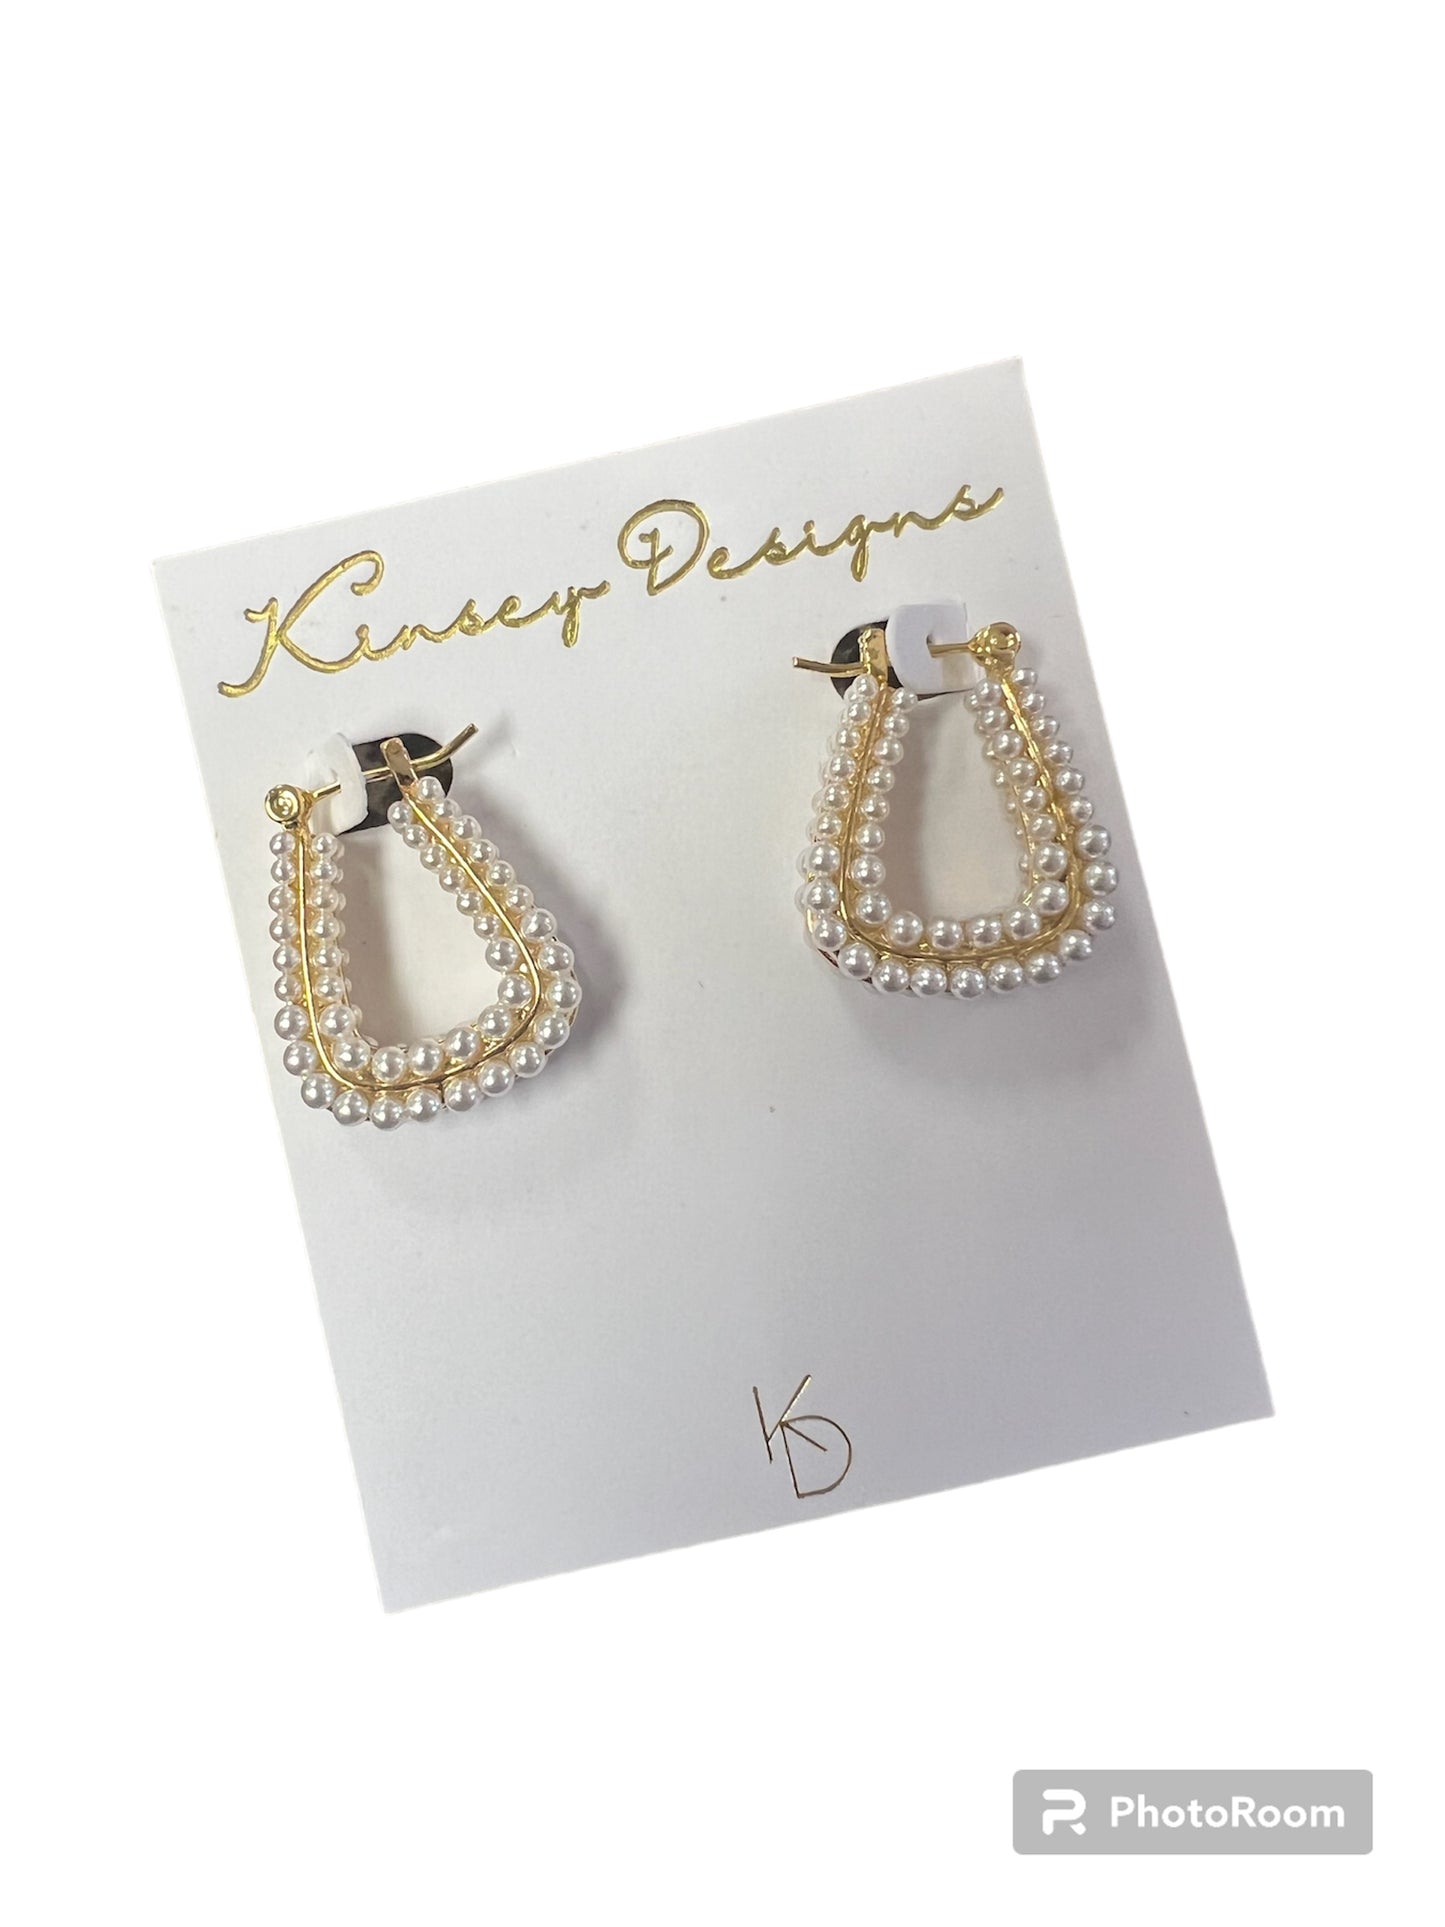 Kinsey Designs Pearl Earrings